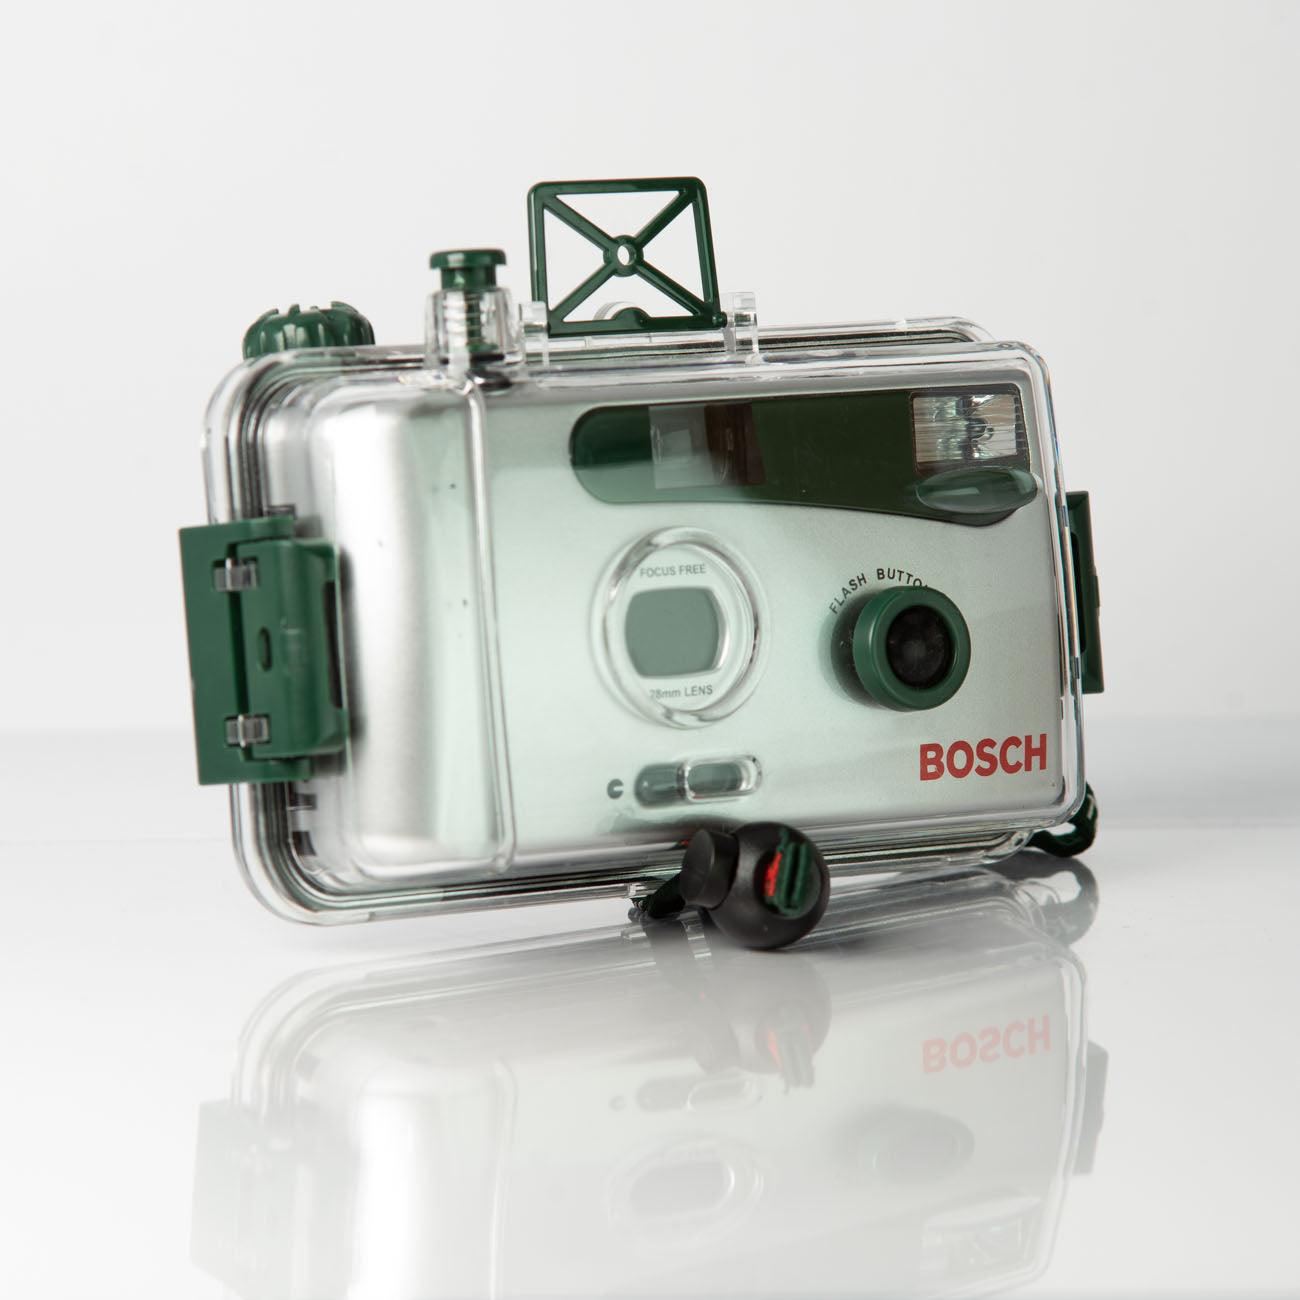 Bosch étanche - appareil photo argentique